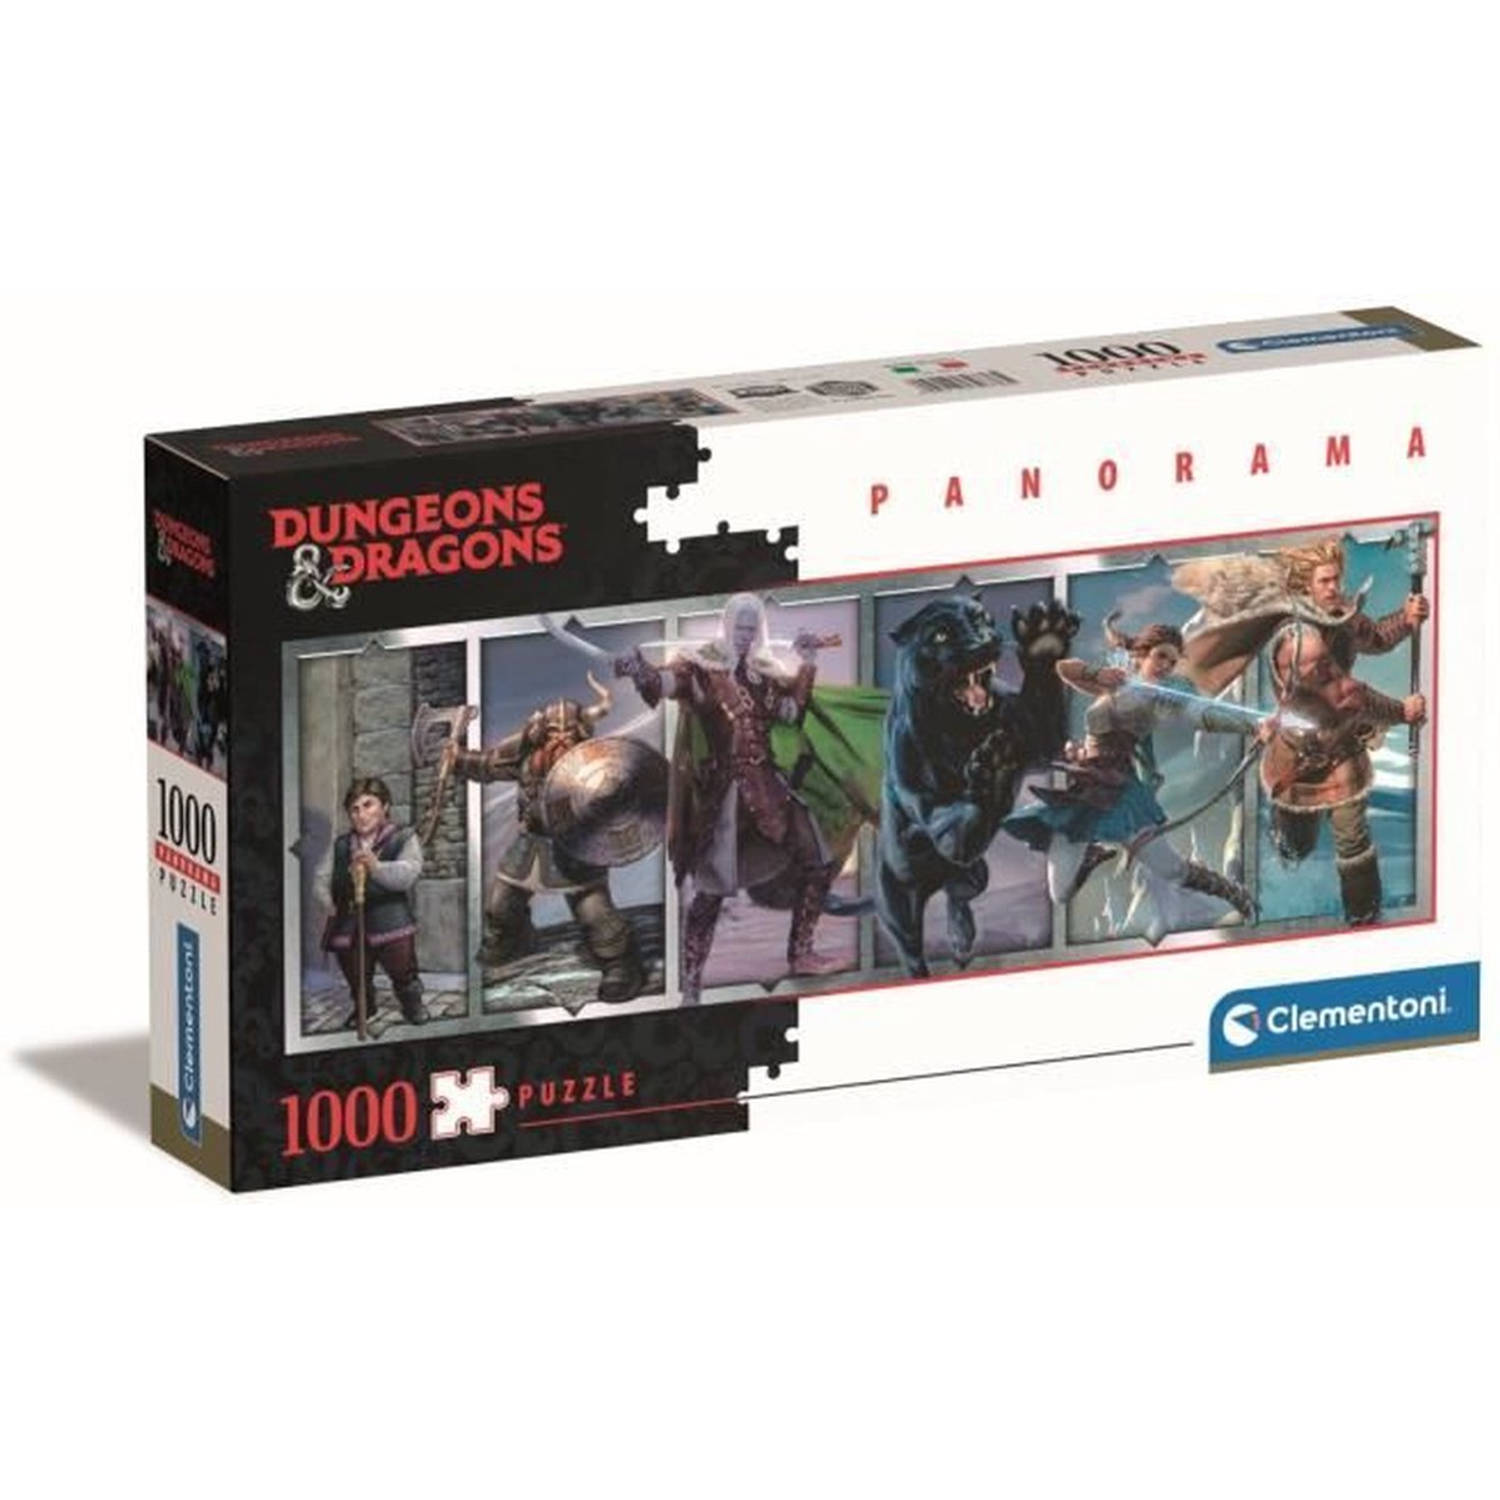 Clementoni - Dungeons & Dragons - Panorama 1000 stukjes